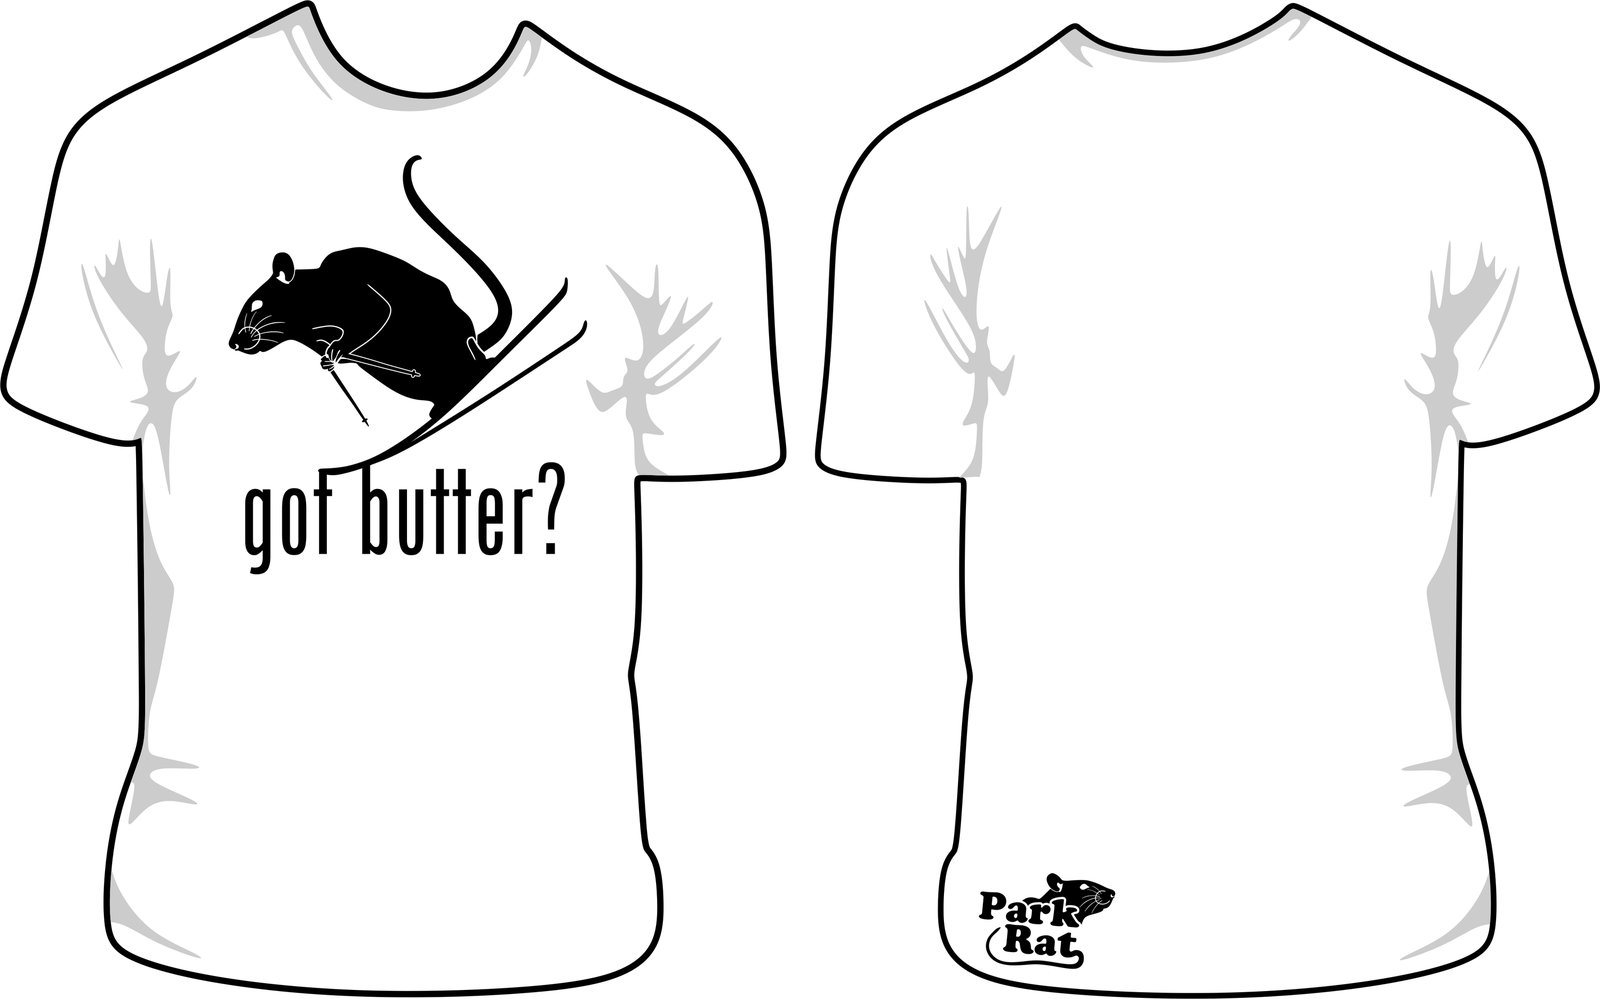 Park Rat Got Butter.jpg